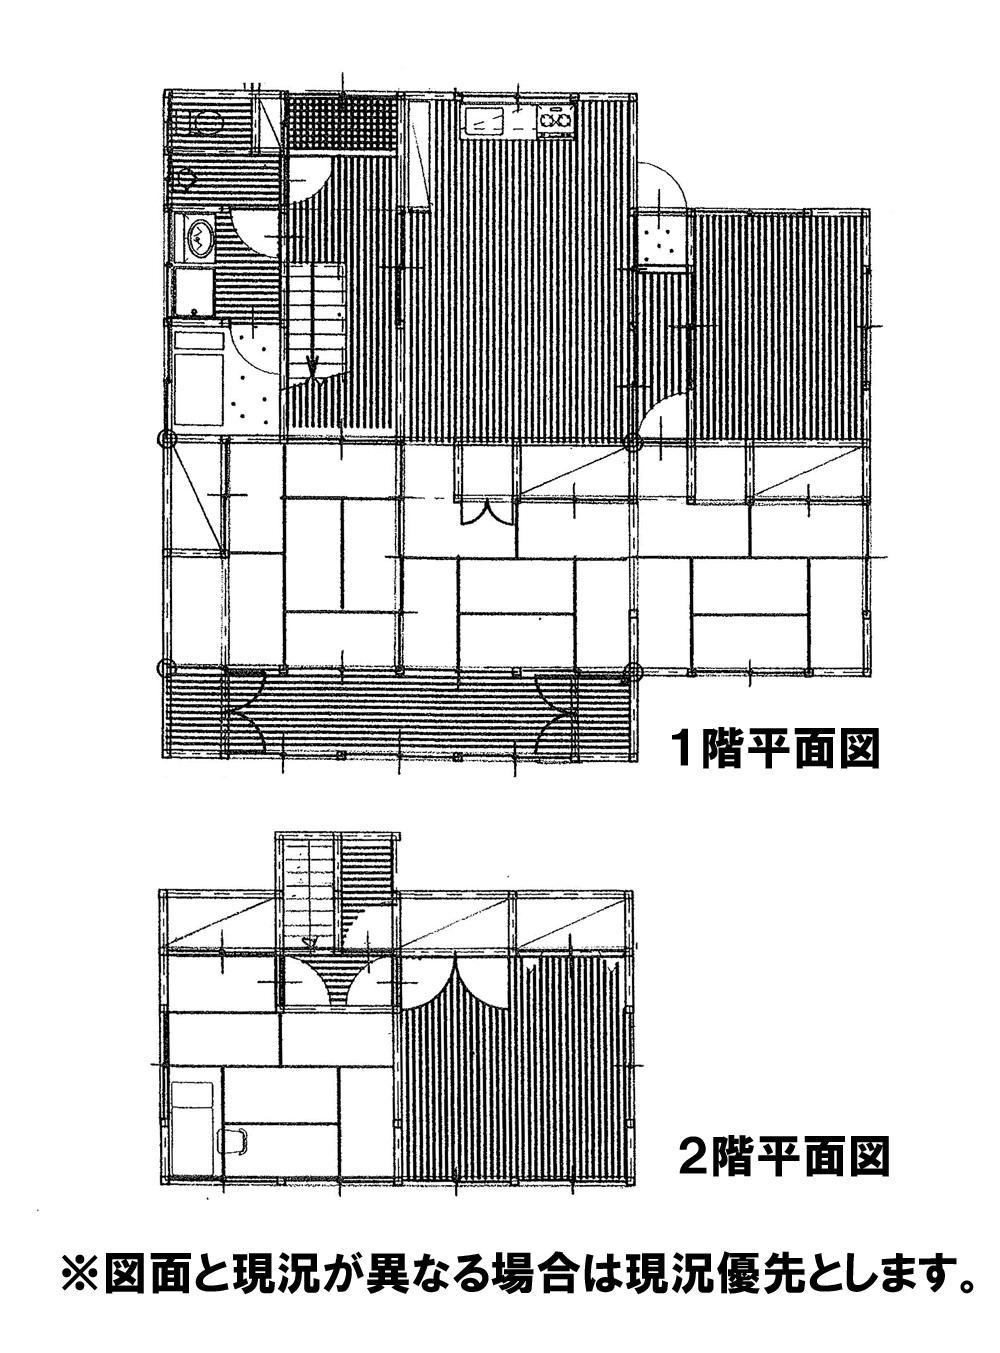 Floor plan. 6.9 million yen, 6DK, Land area 385.15 sq m , Building area 99.36 sq m 6DK